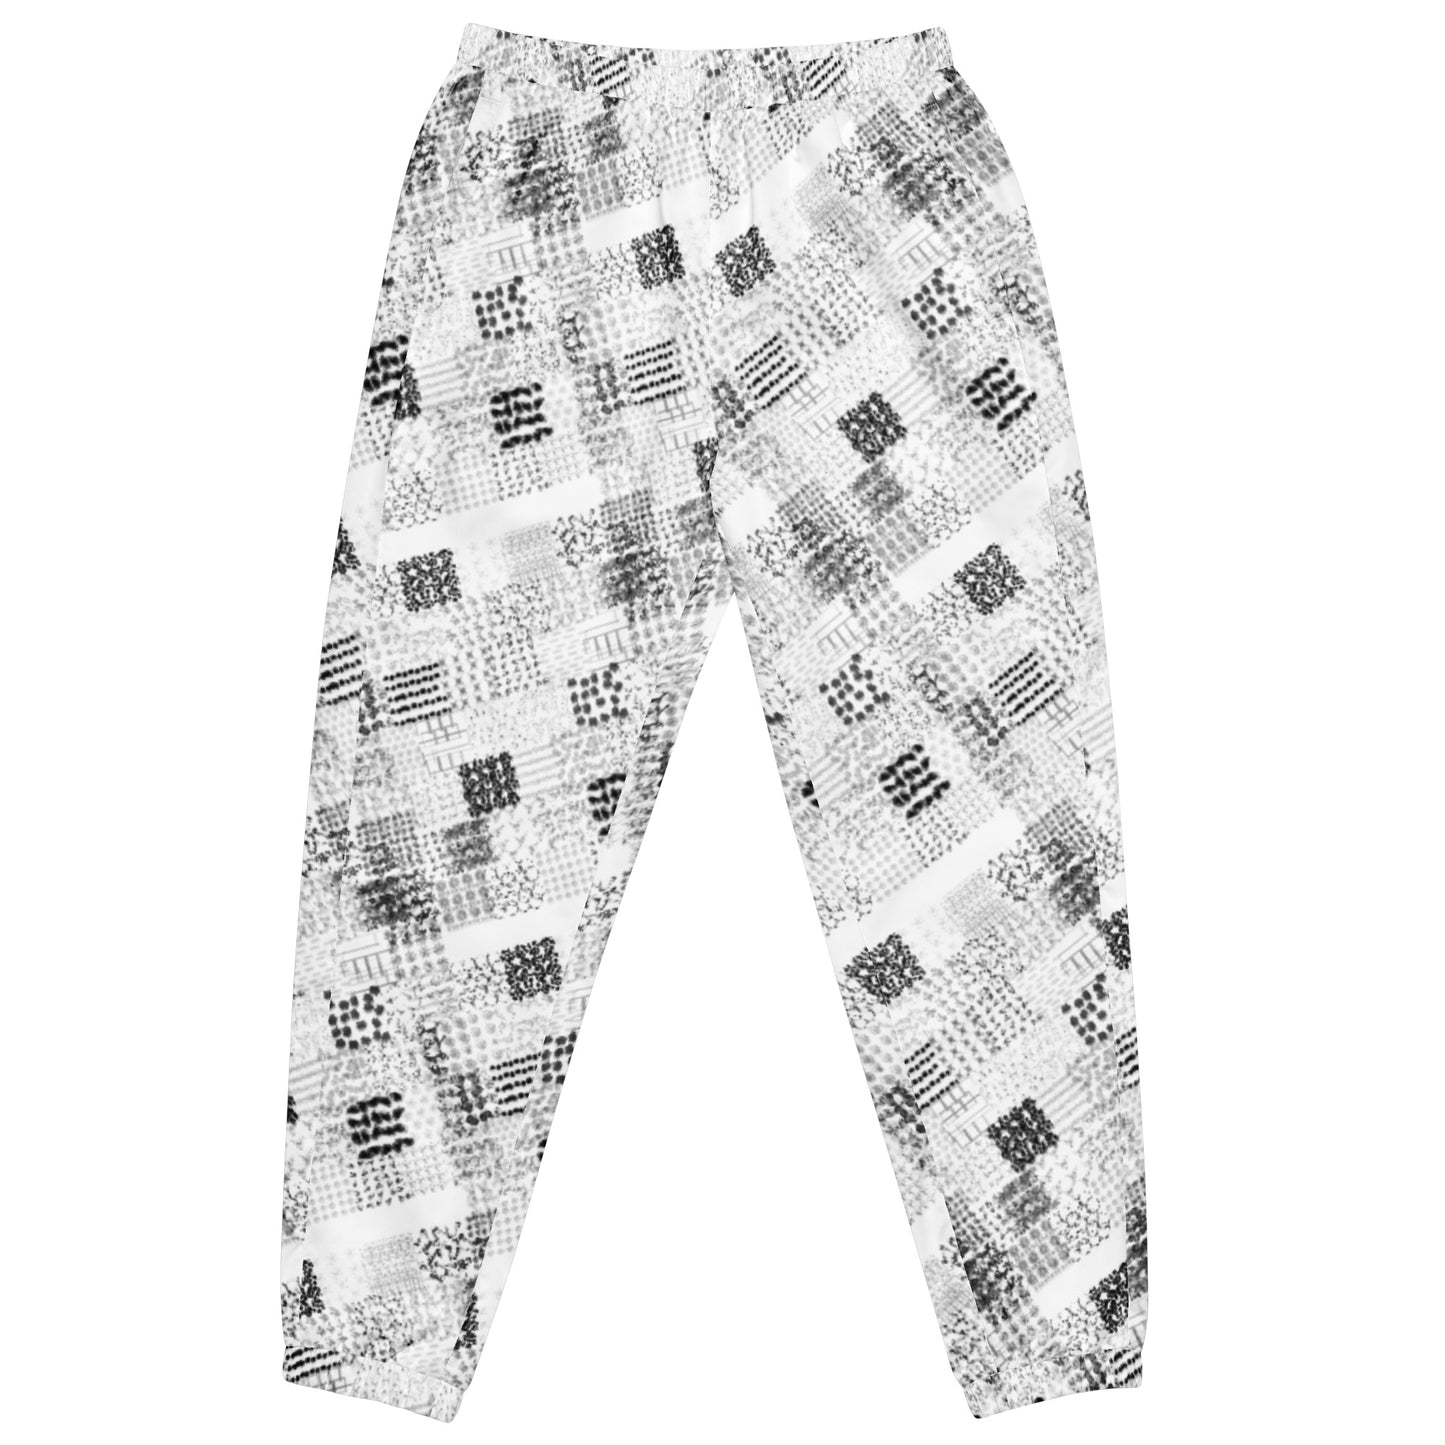 Pantalon de survêtement unisexe "Délire Hivernal" style patchwork